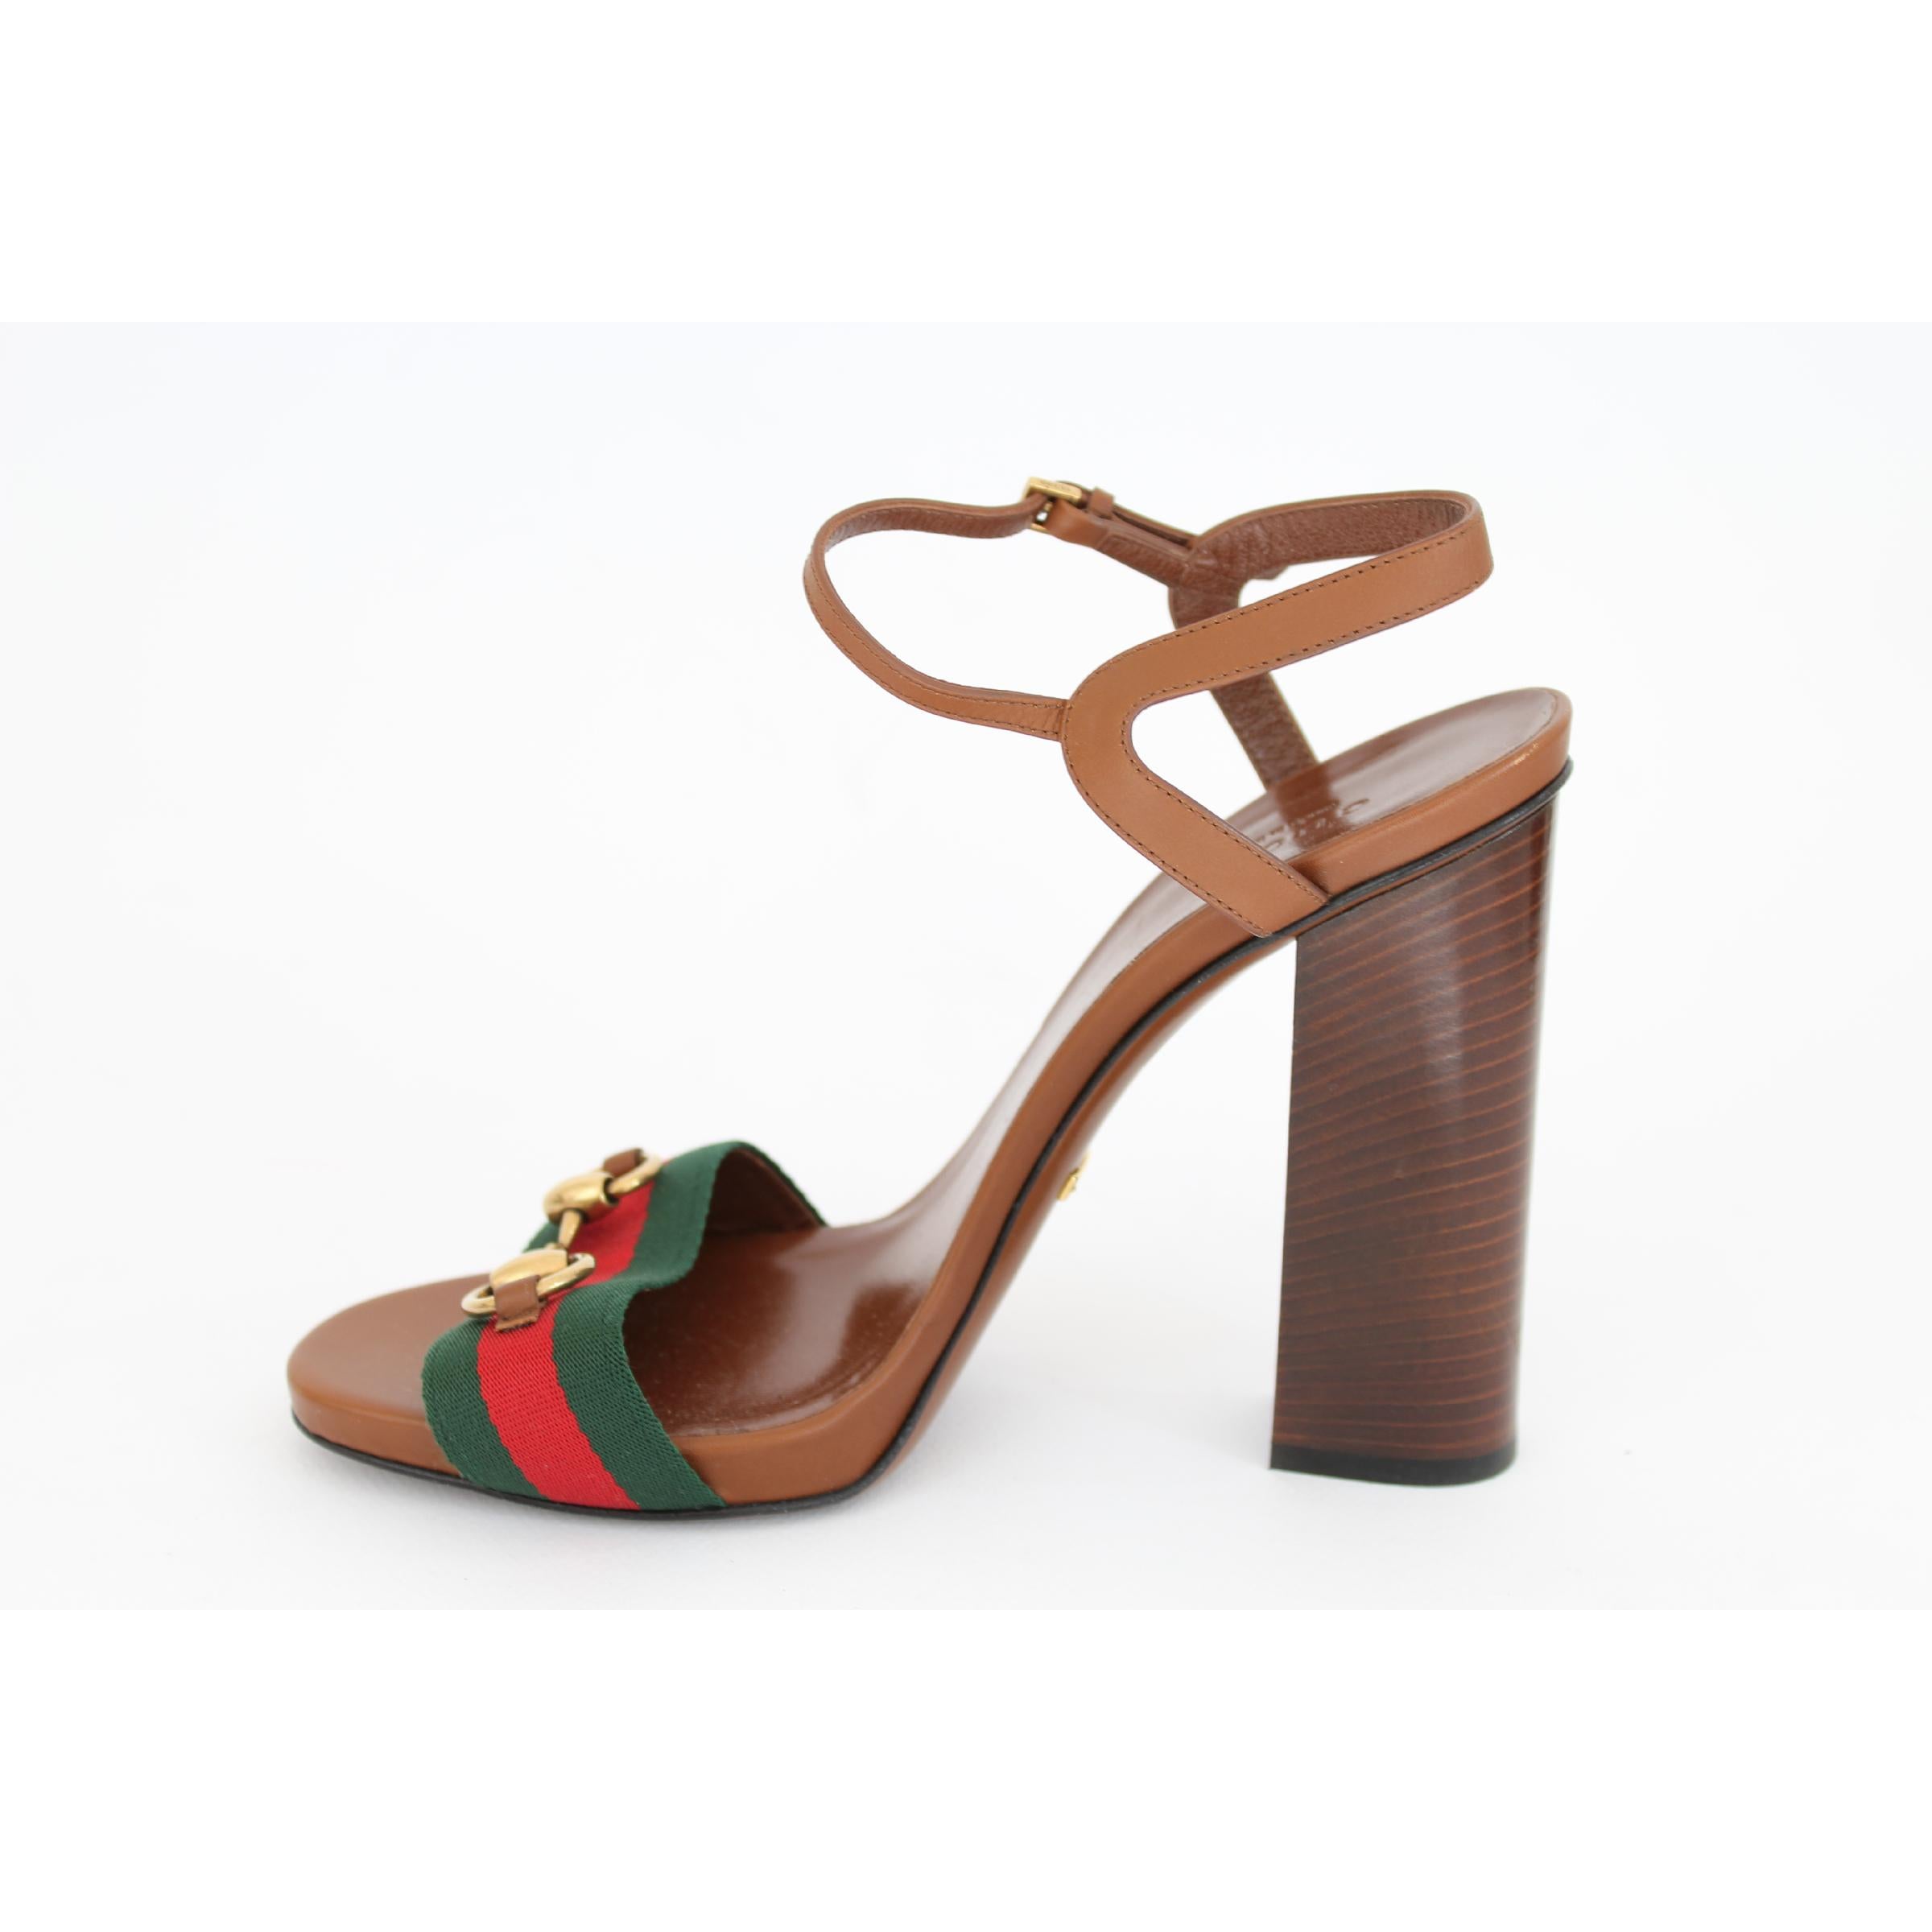  Nouveau Gucci Lifford Brown Leather Canvas Sandals Heels Pump Shoes Pour femmes 